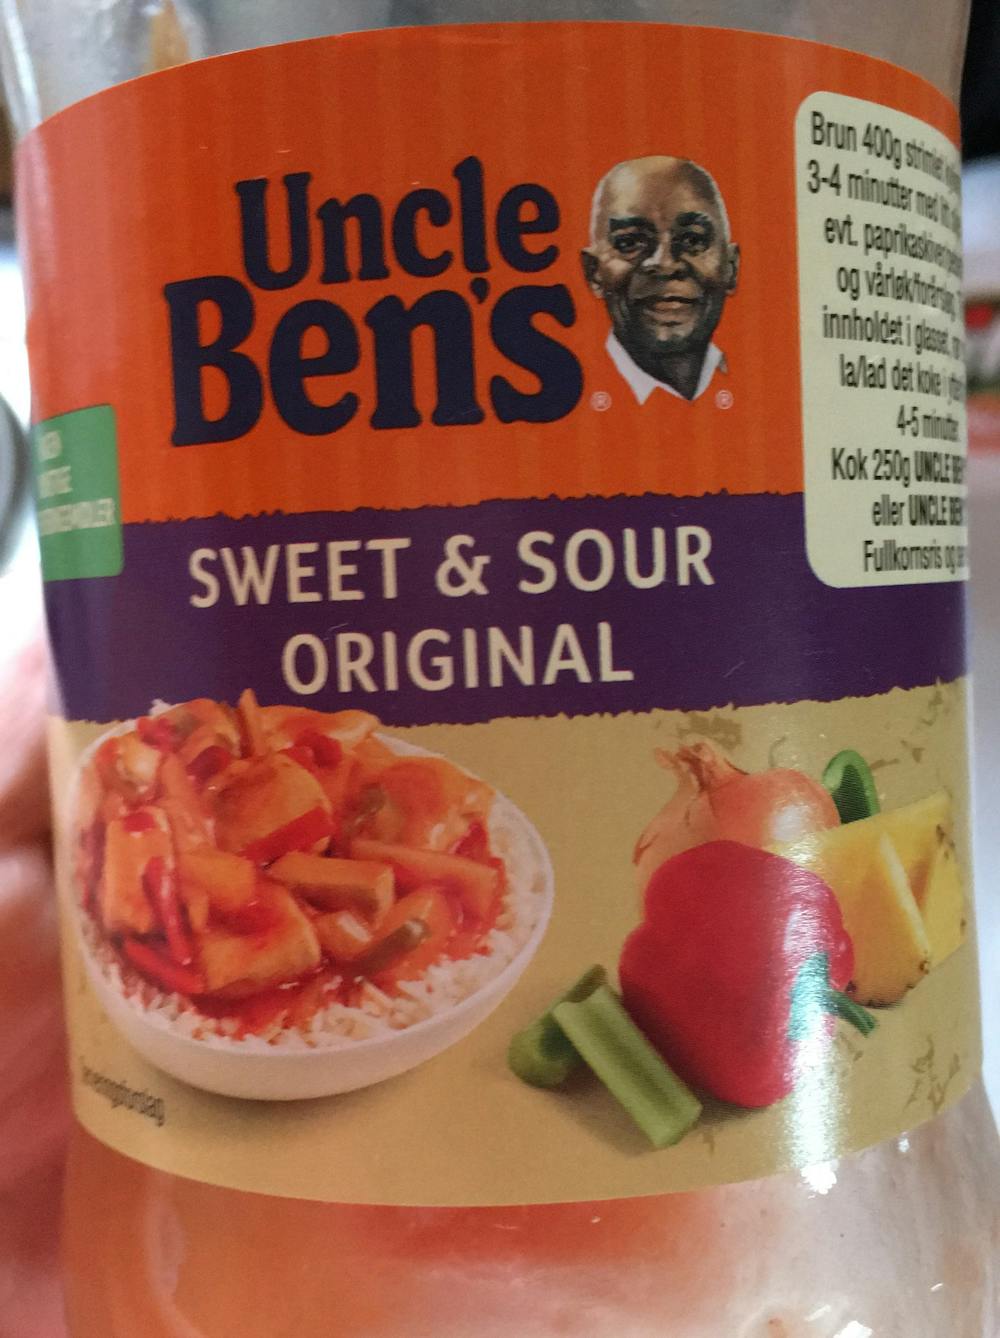 Sweet & sour original, Uncle Ben's